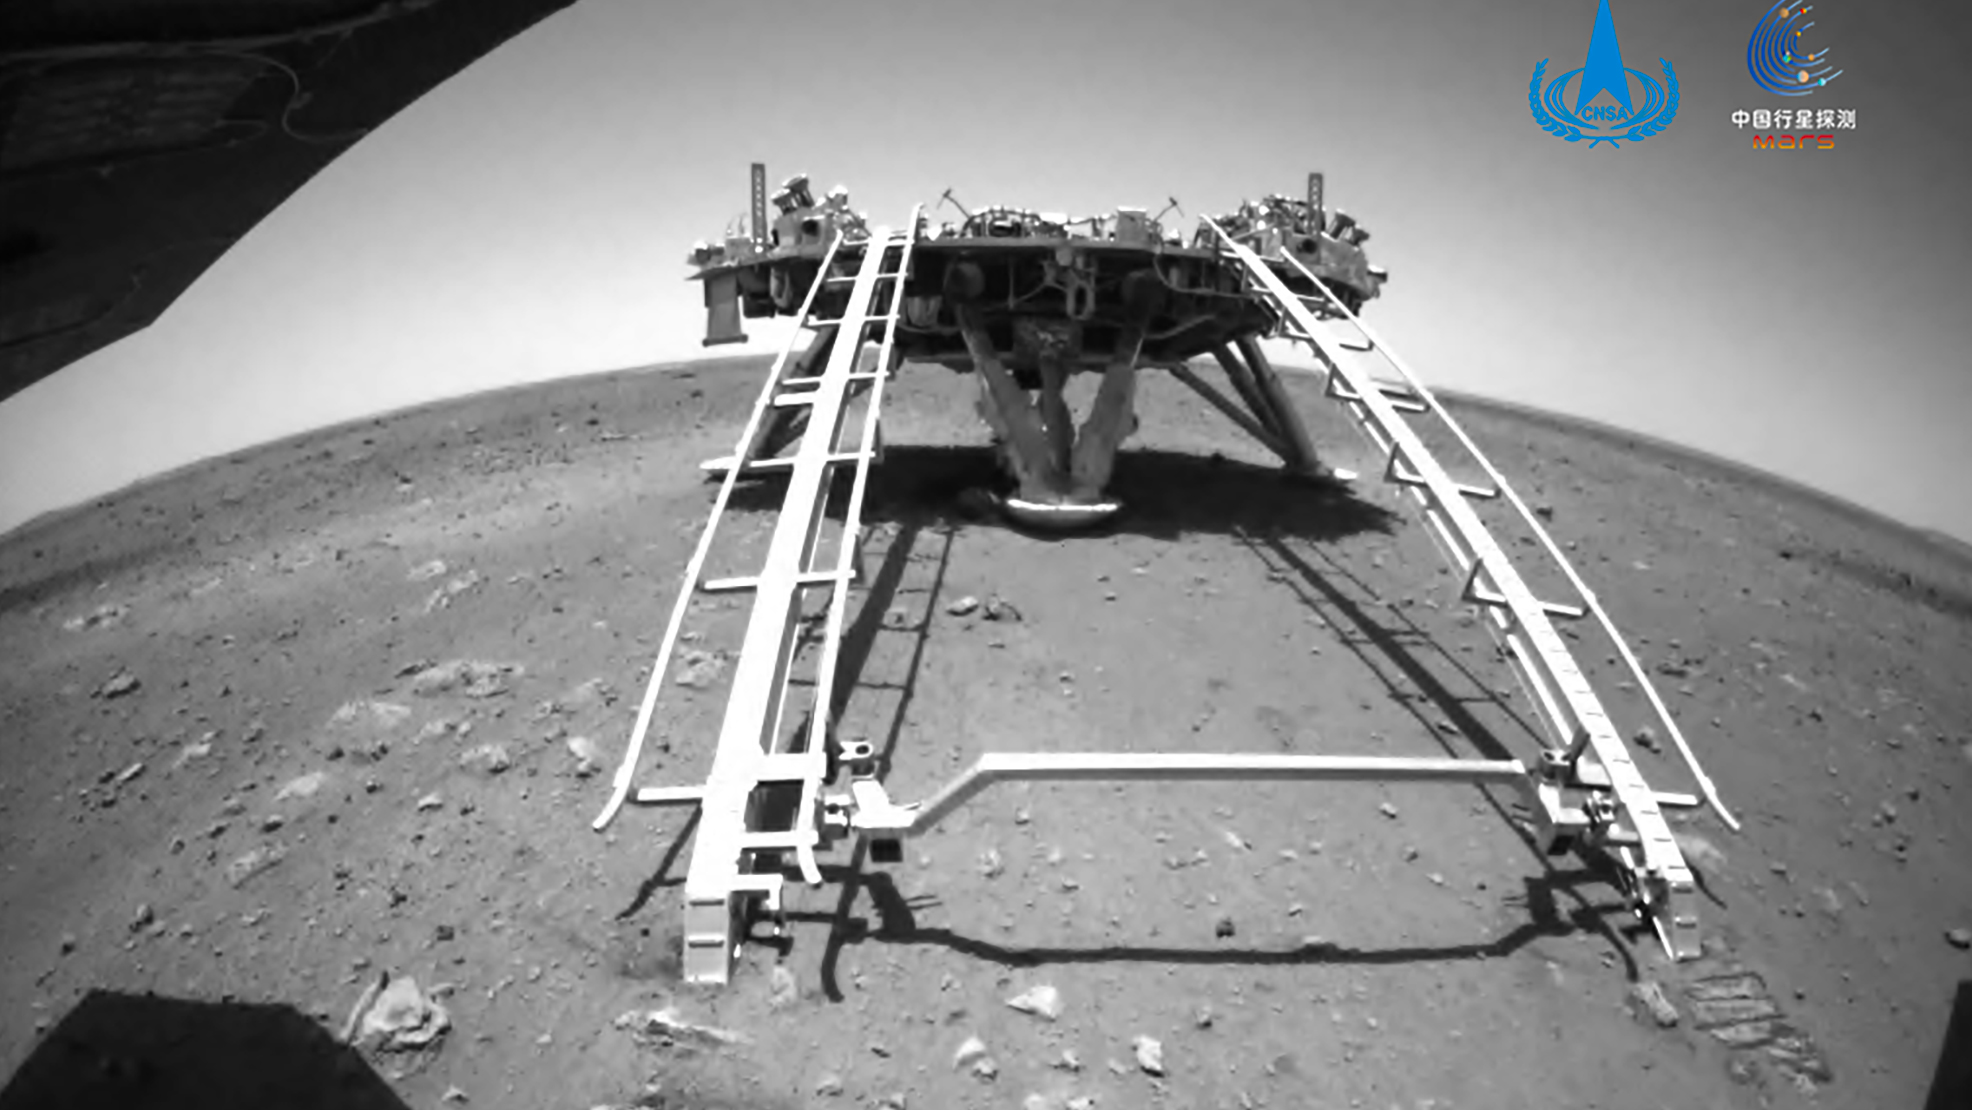 Le rover Zhurong est descendu de l'atterrisseur qui l'a amené sur Mars. © CNSA 